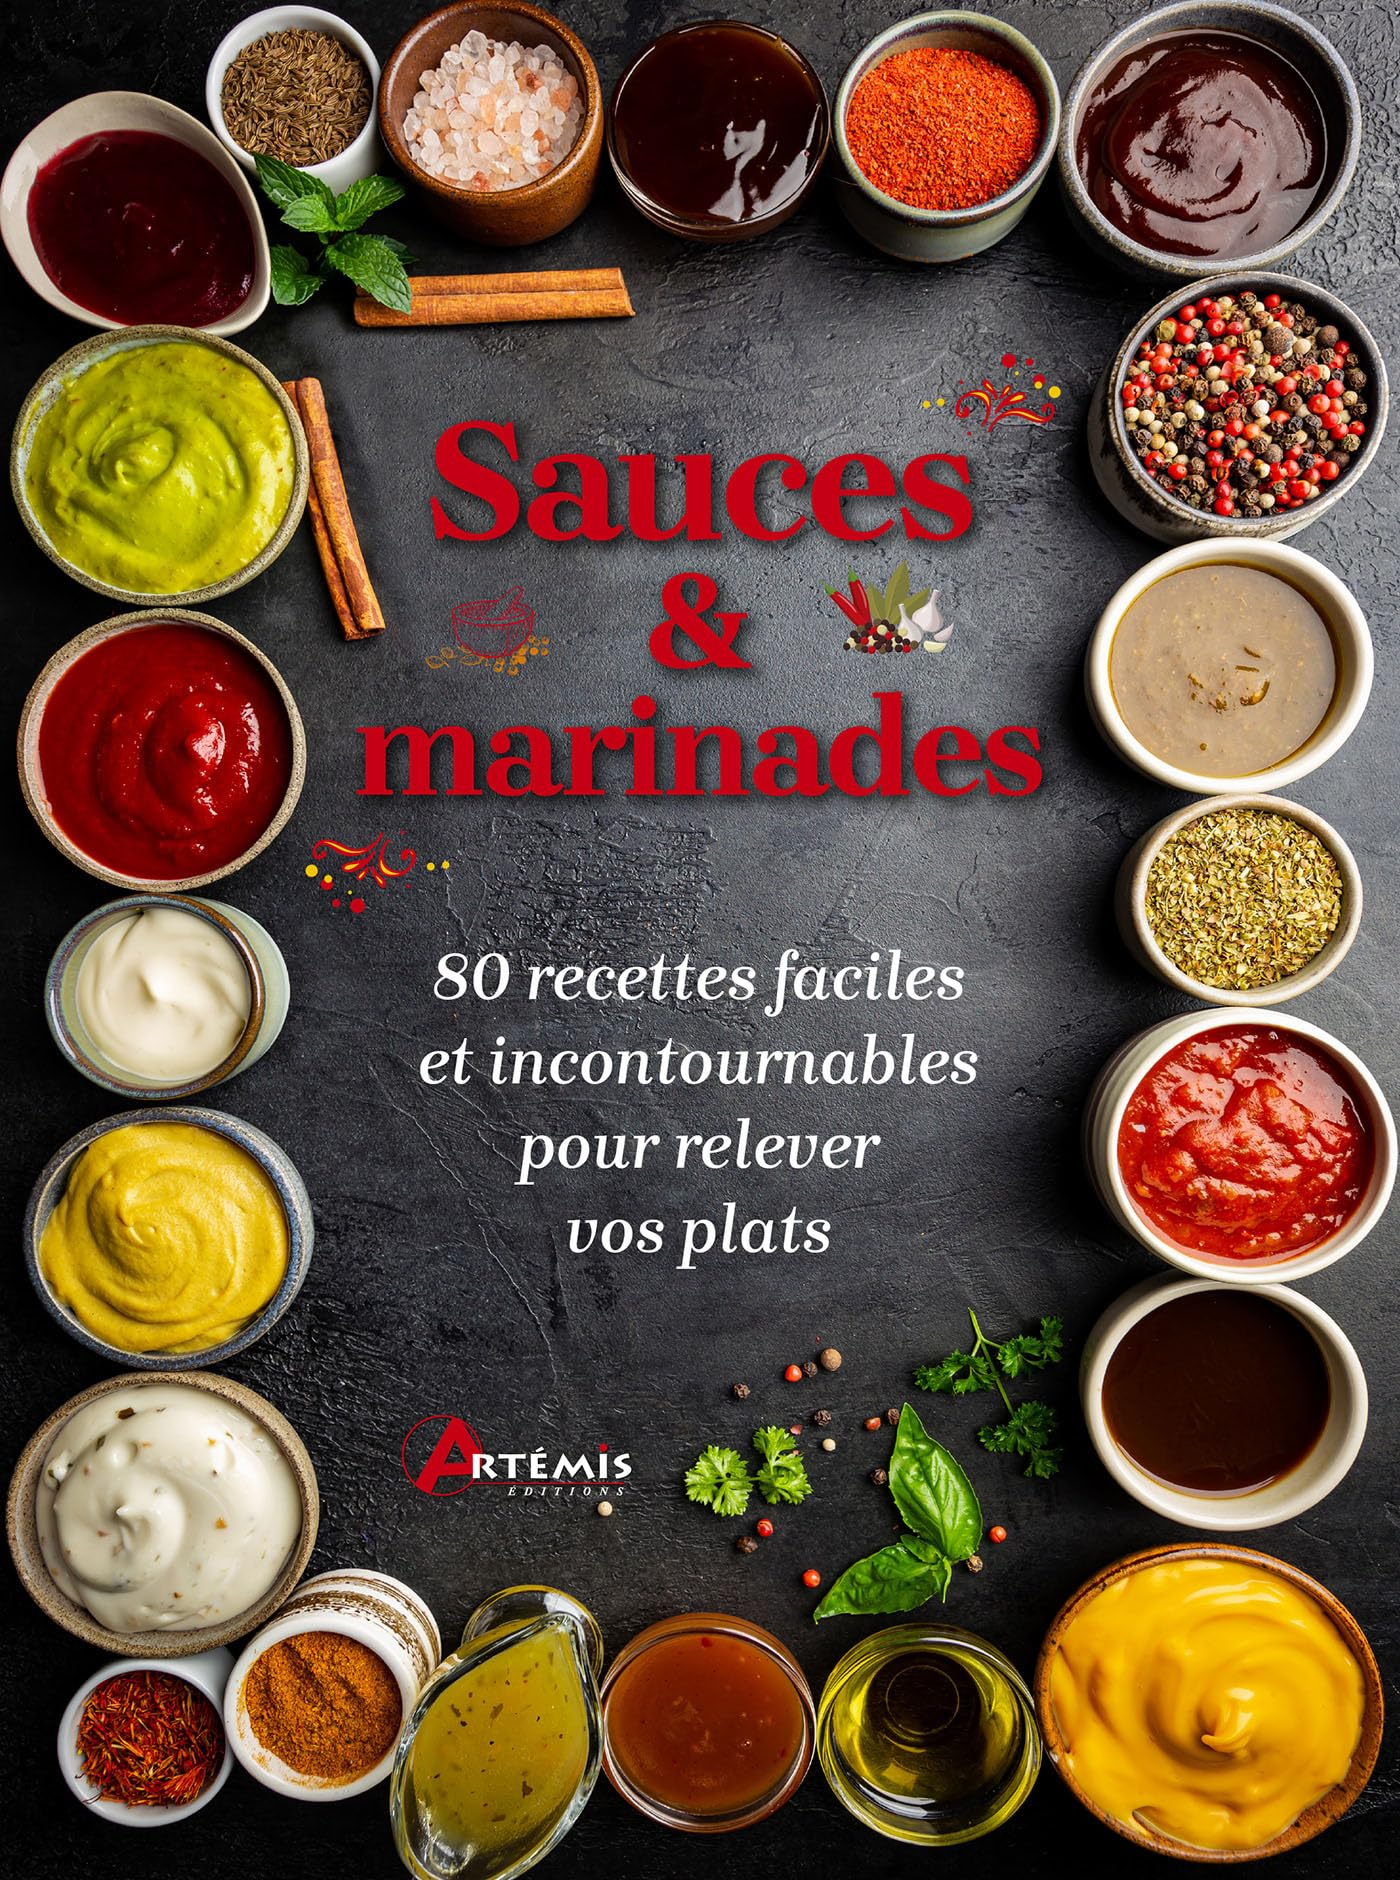 Sauces & marinades : 80 recettes faciles et incontournables pour relever vos plats